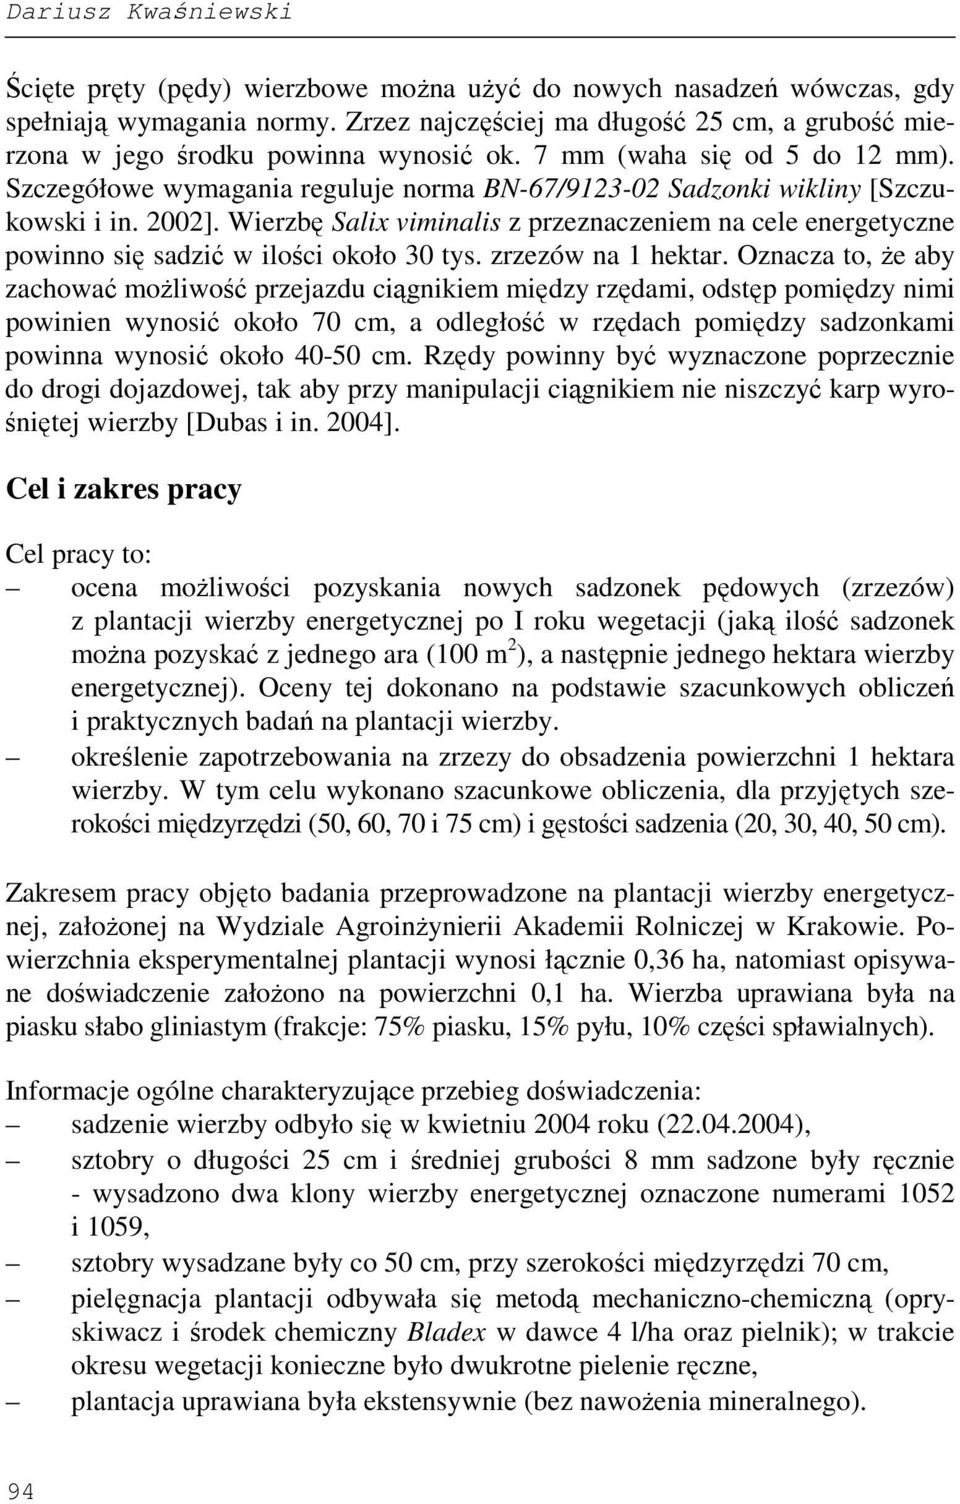 Szczegółowe wymagania reguluje norma BN-67/9123-02 Sadzonki wikliny [Szczukowski i in. 2002]. Wierzbę Salix viminalis z przeznaczeniem na cele energetyczne powinno się sadzić w ilości około 30 tys.